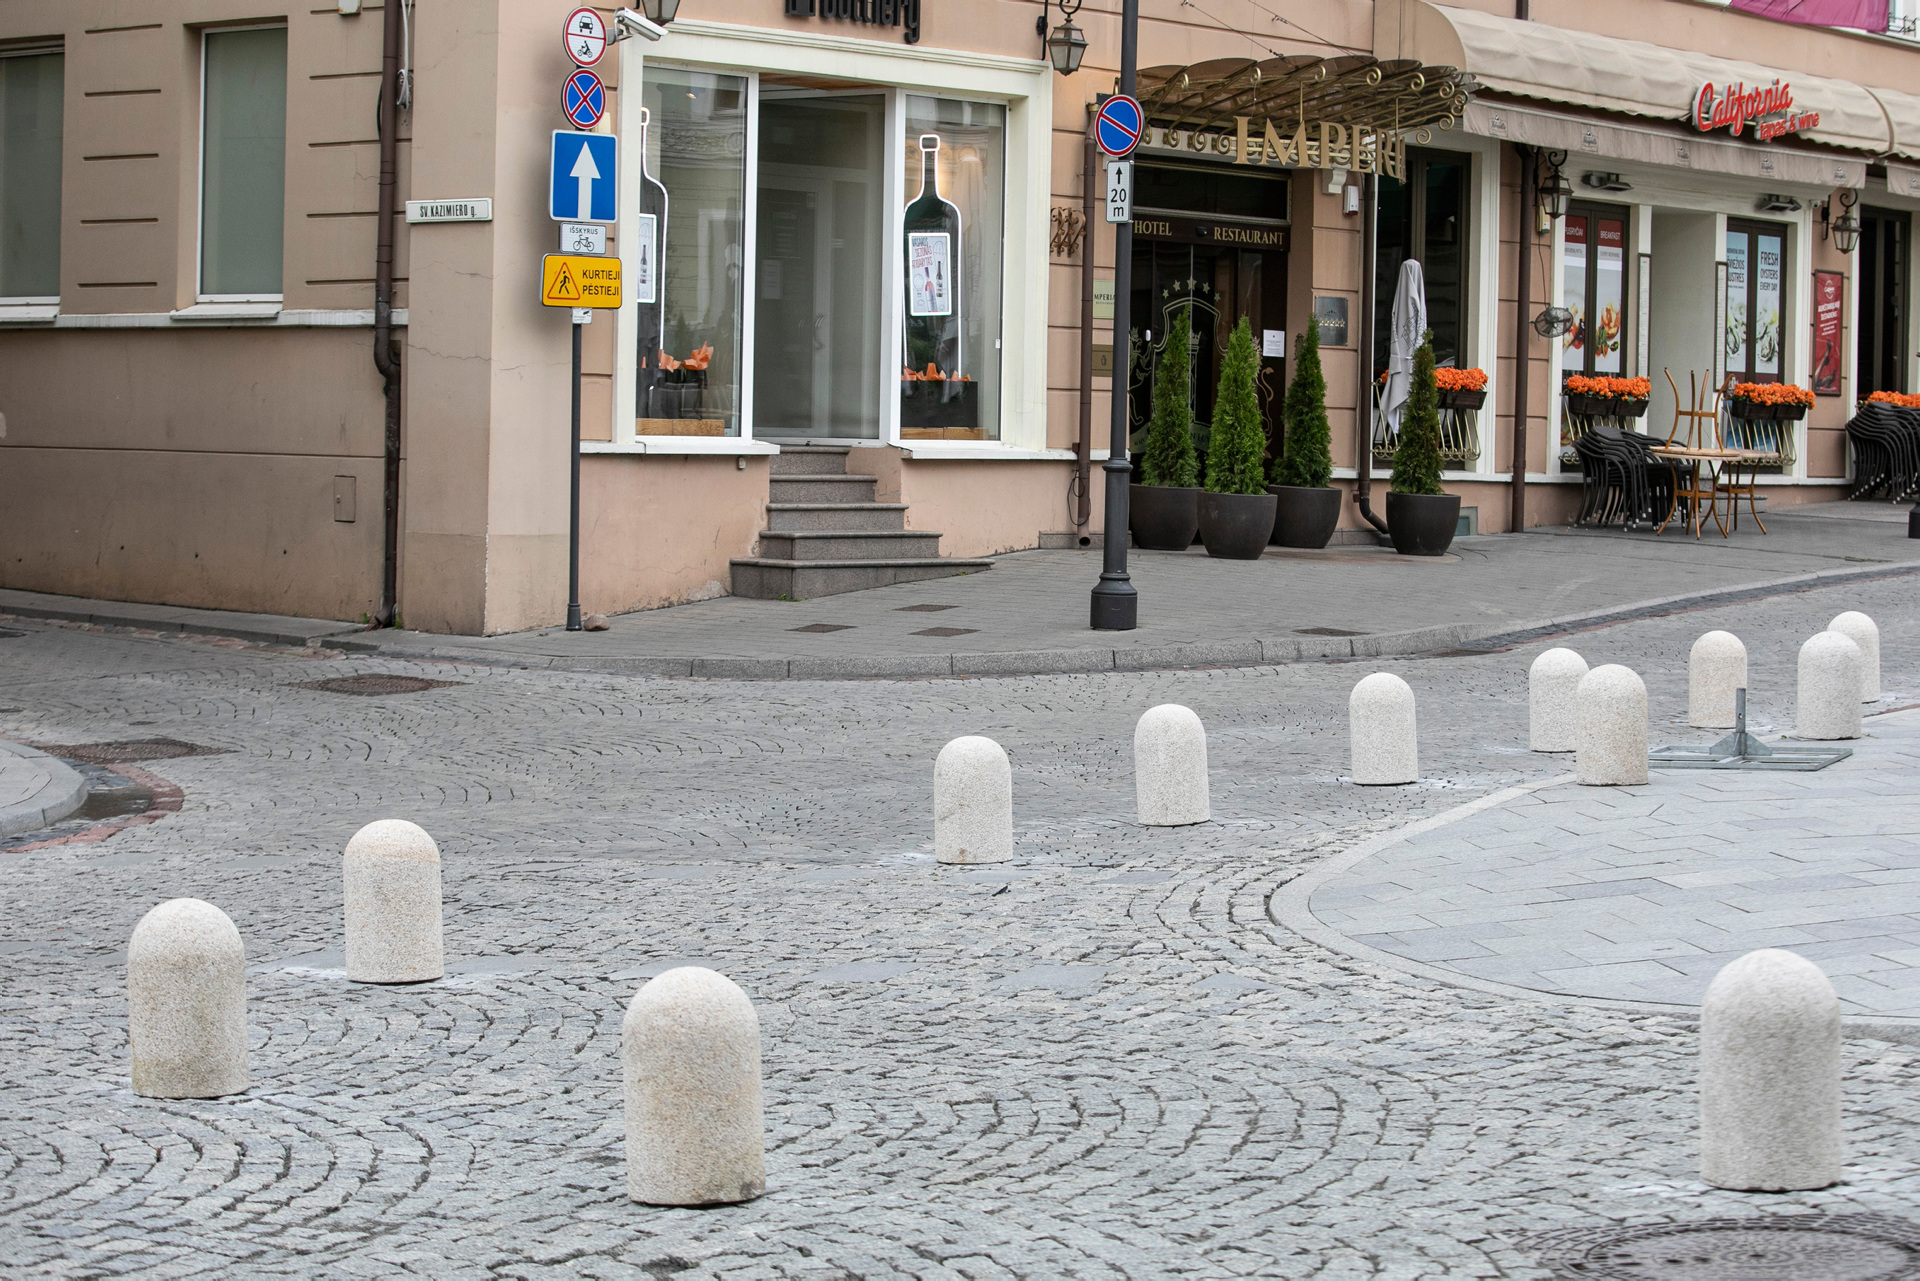 Первые 100 дней мэра столицы, отмена столбиков в Старом городе Вильнюса, чемпионат по приготовлению холодного борща и другие новости